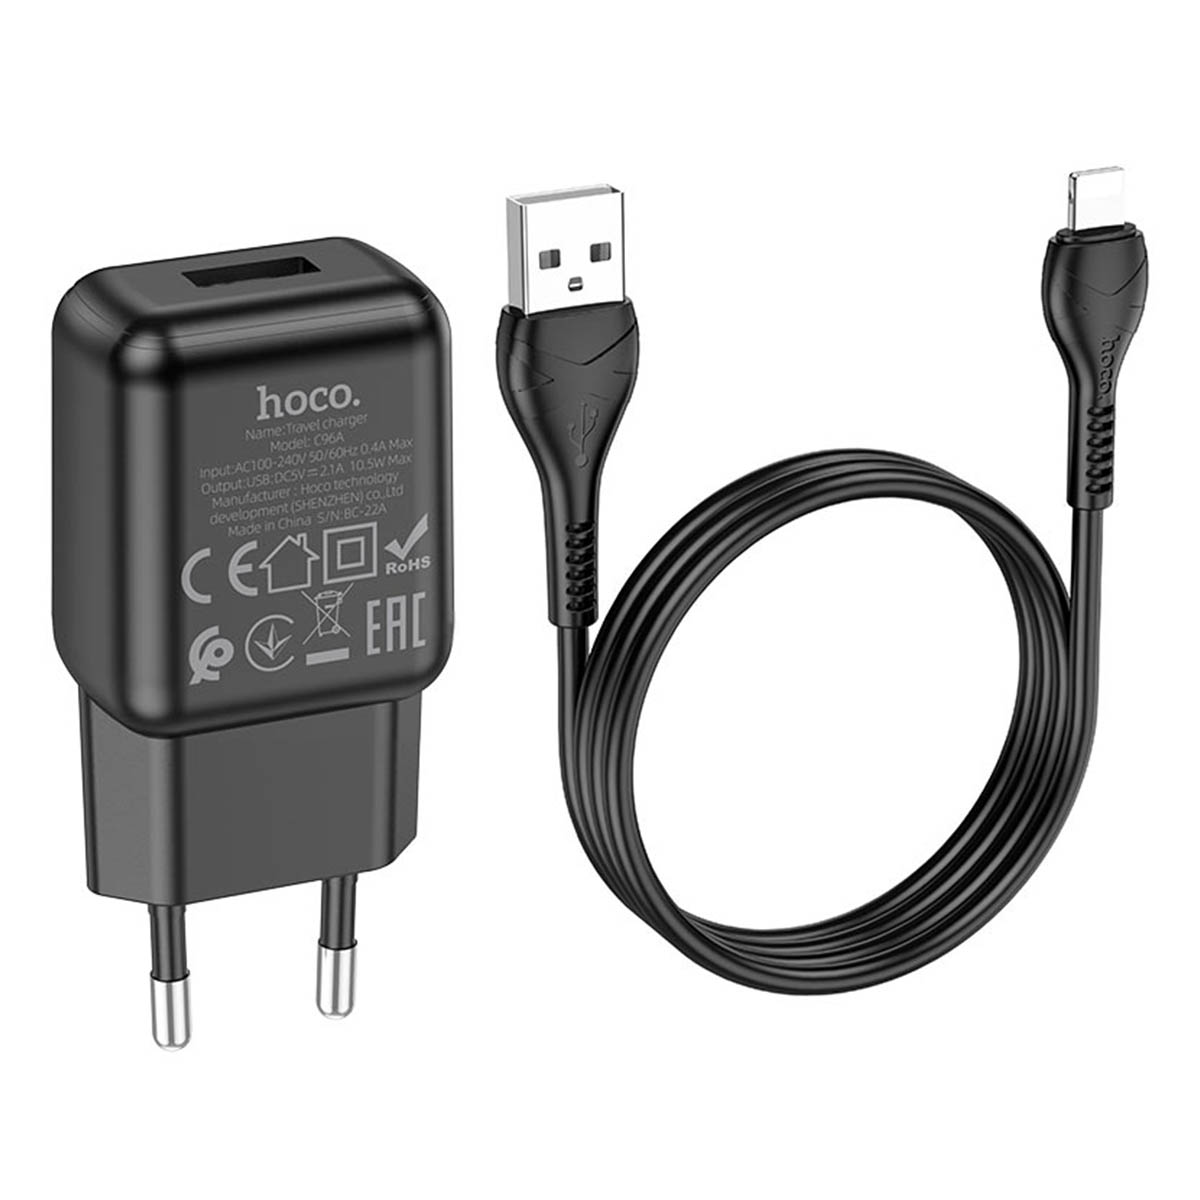 СЗУ (сетевое зарядное устройство) HOCO C96A, адаптер 1 USB 5V-2.1A, кабель Lightning 8 pin, цвет черный